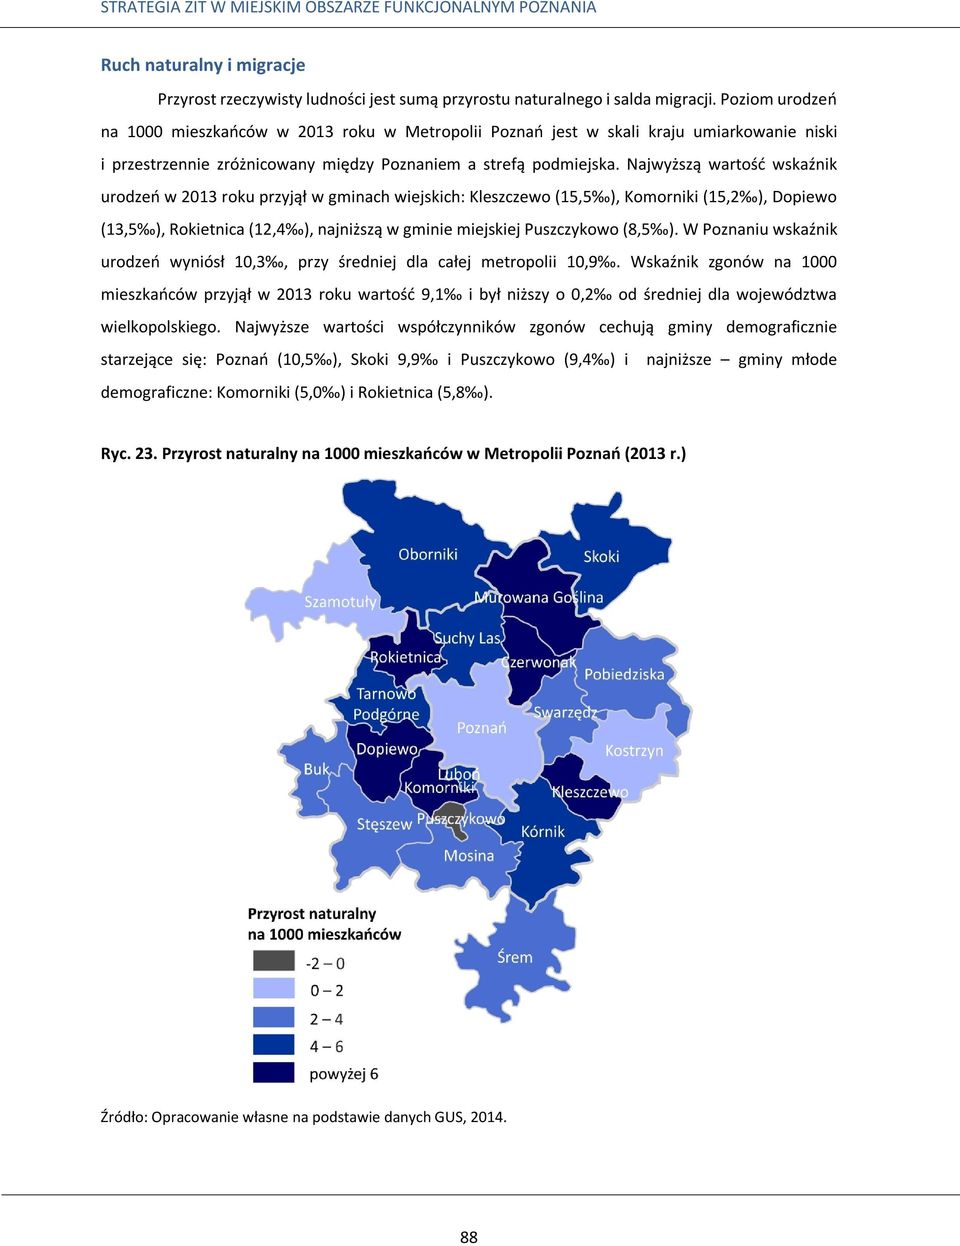 Najwyższą wartość wskaźnik urodzeń w 2013 roku przyjął w gminach wiejskich: Kleszczewo (15,5 ), Komorniki (15,2 ), Dopiewo (13,5 ), Rokietnica (12,4 ), najniższą w gminie miejskiej Puszczykowo (8,5 ).